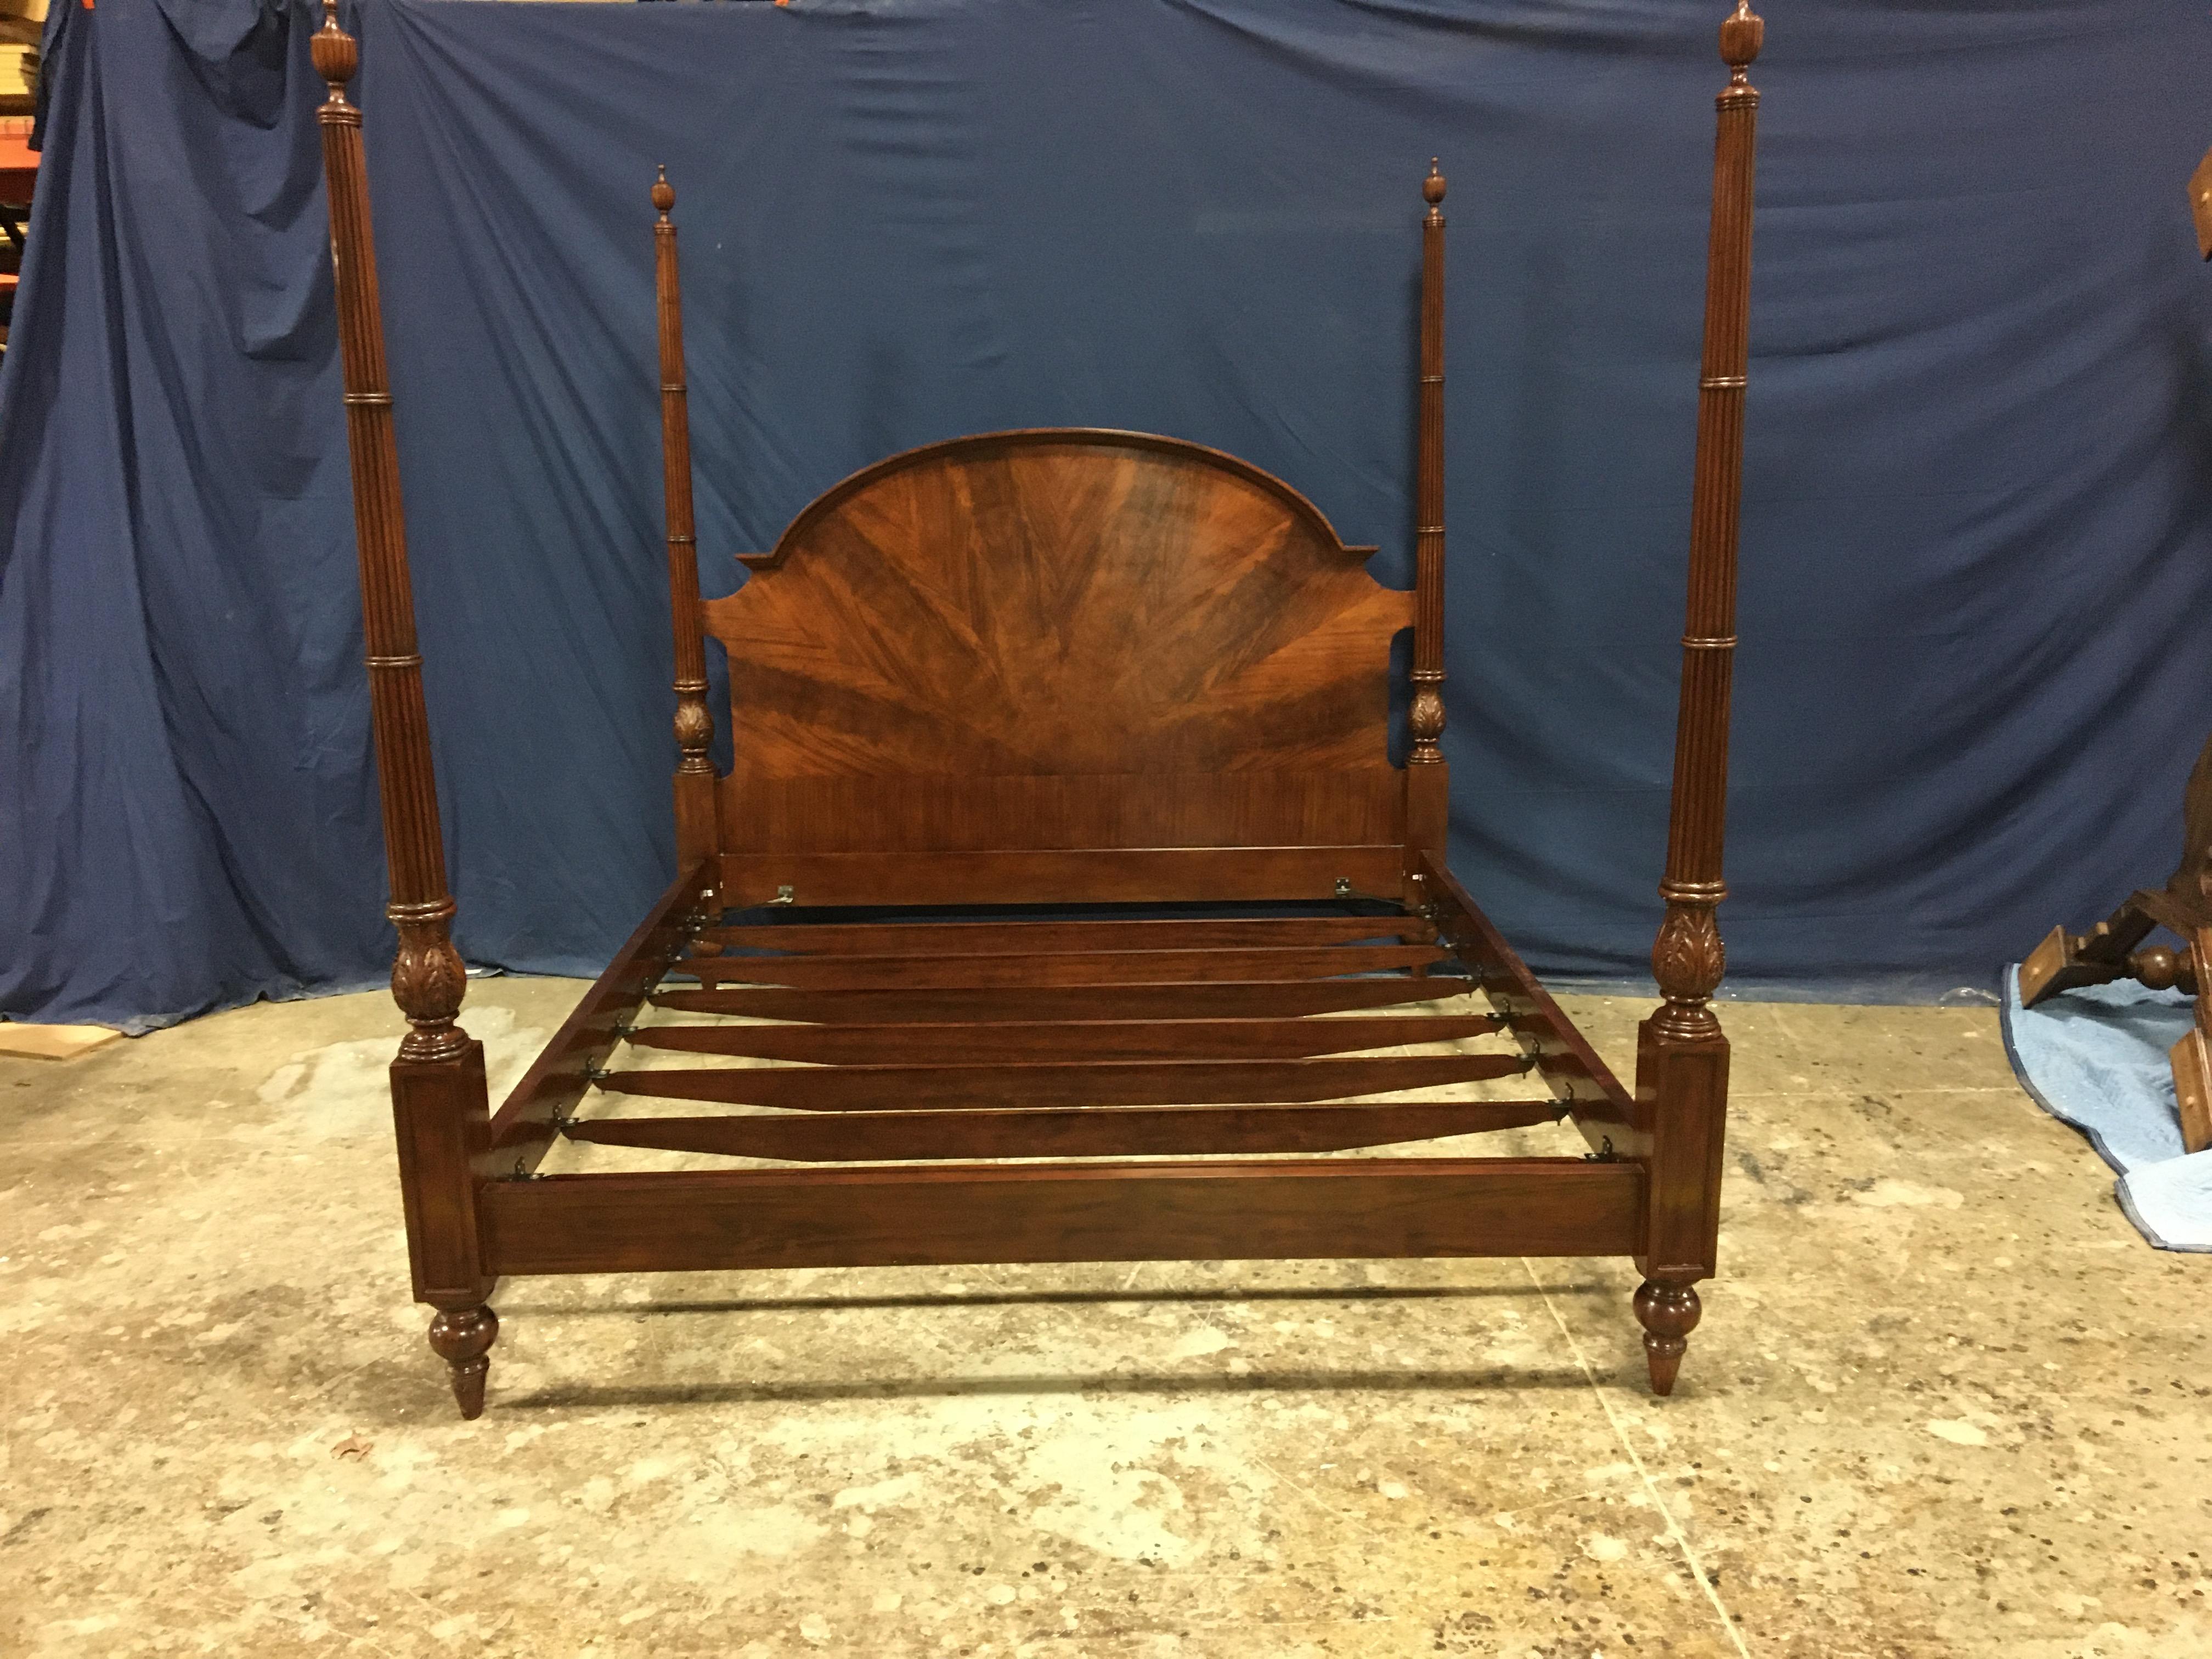 Il s'agit d'un nouveau lit à baldaquin traditionnel king size en acajou, fabriqué par Leighton Hall Furniture. Son design s'inspire des lits à baldaquin traditionnels du passé et se caractérise par des montants cannelés sculptés à la main et une